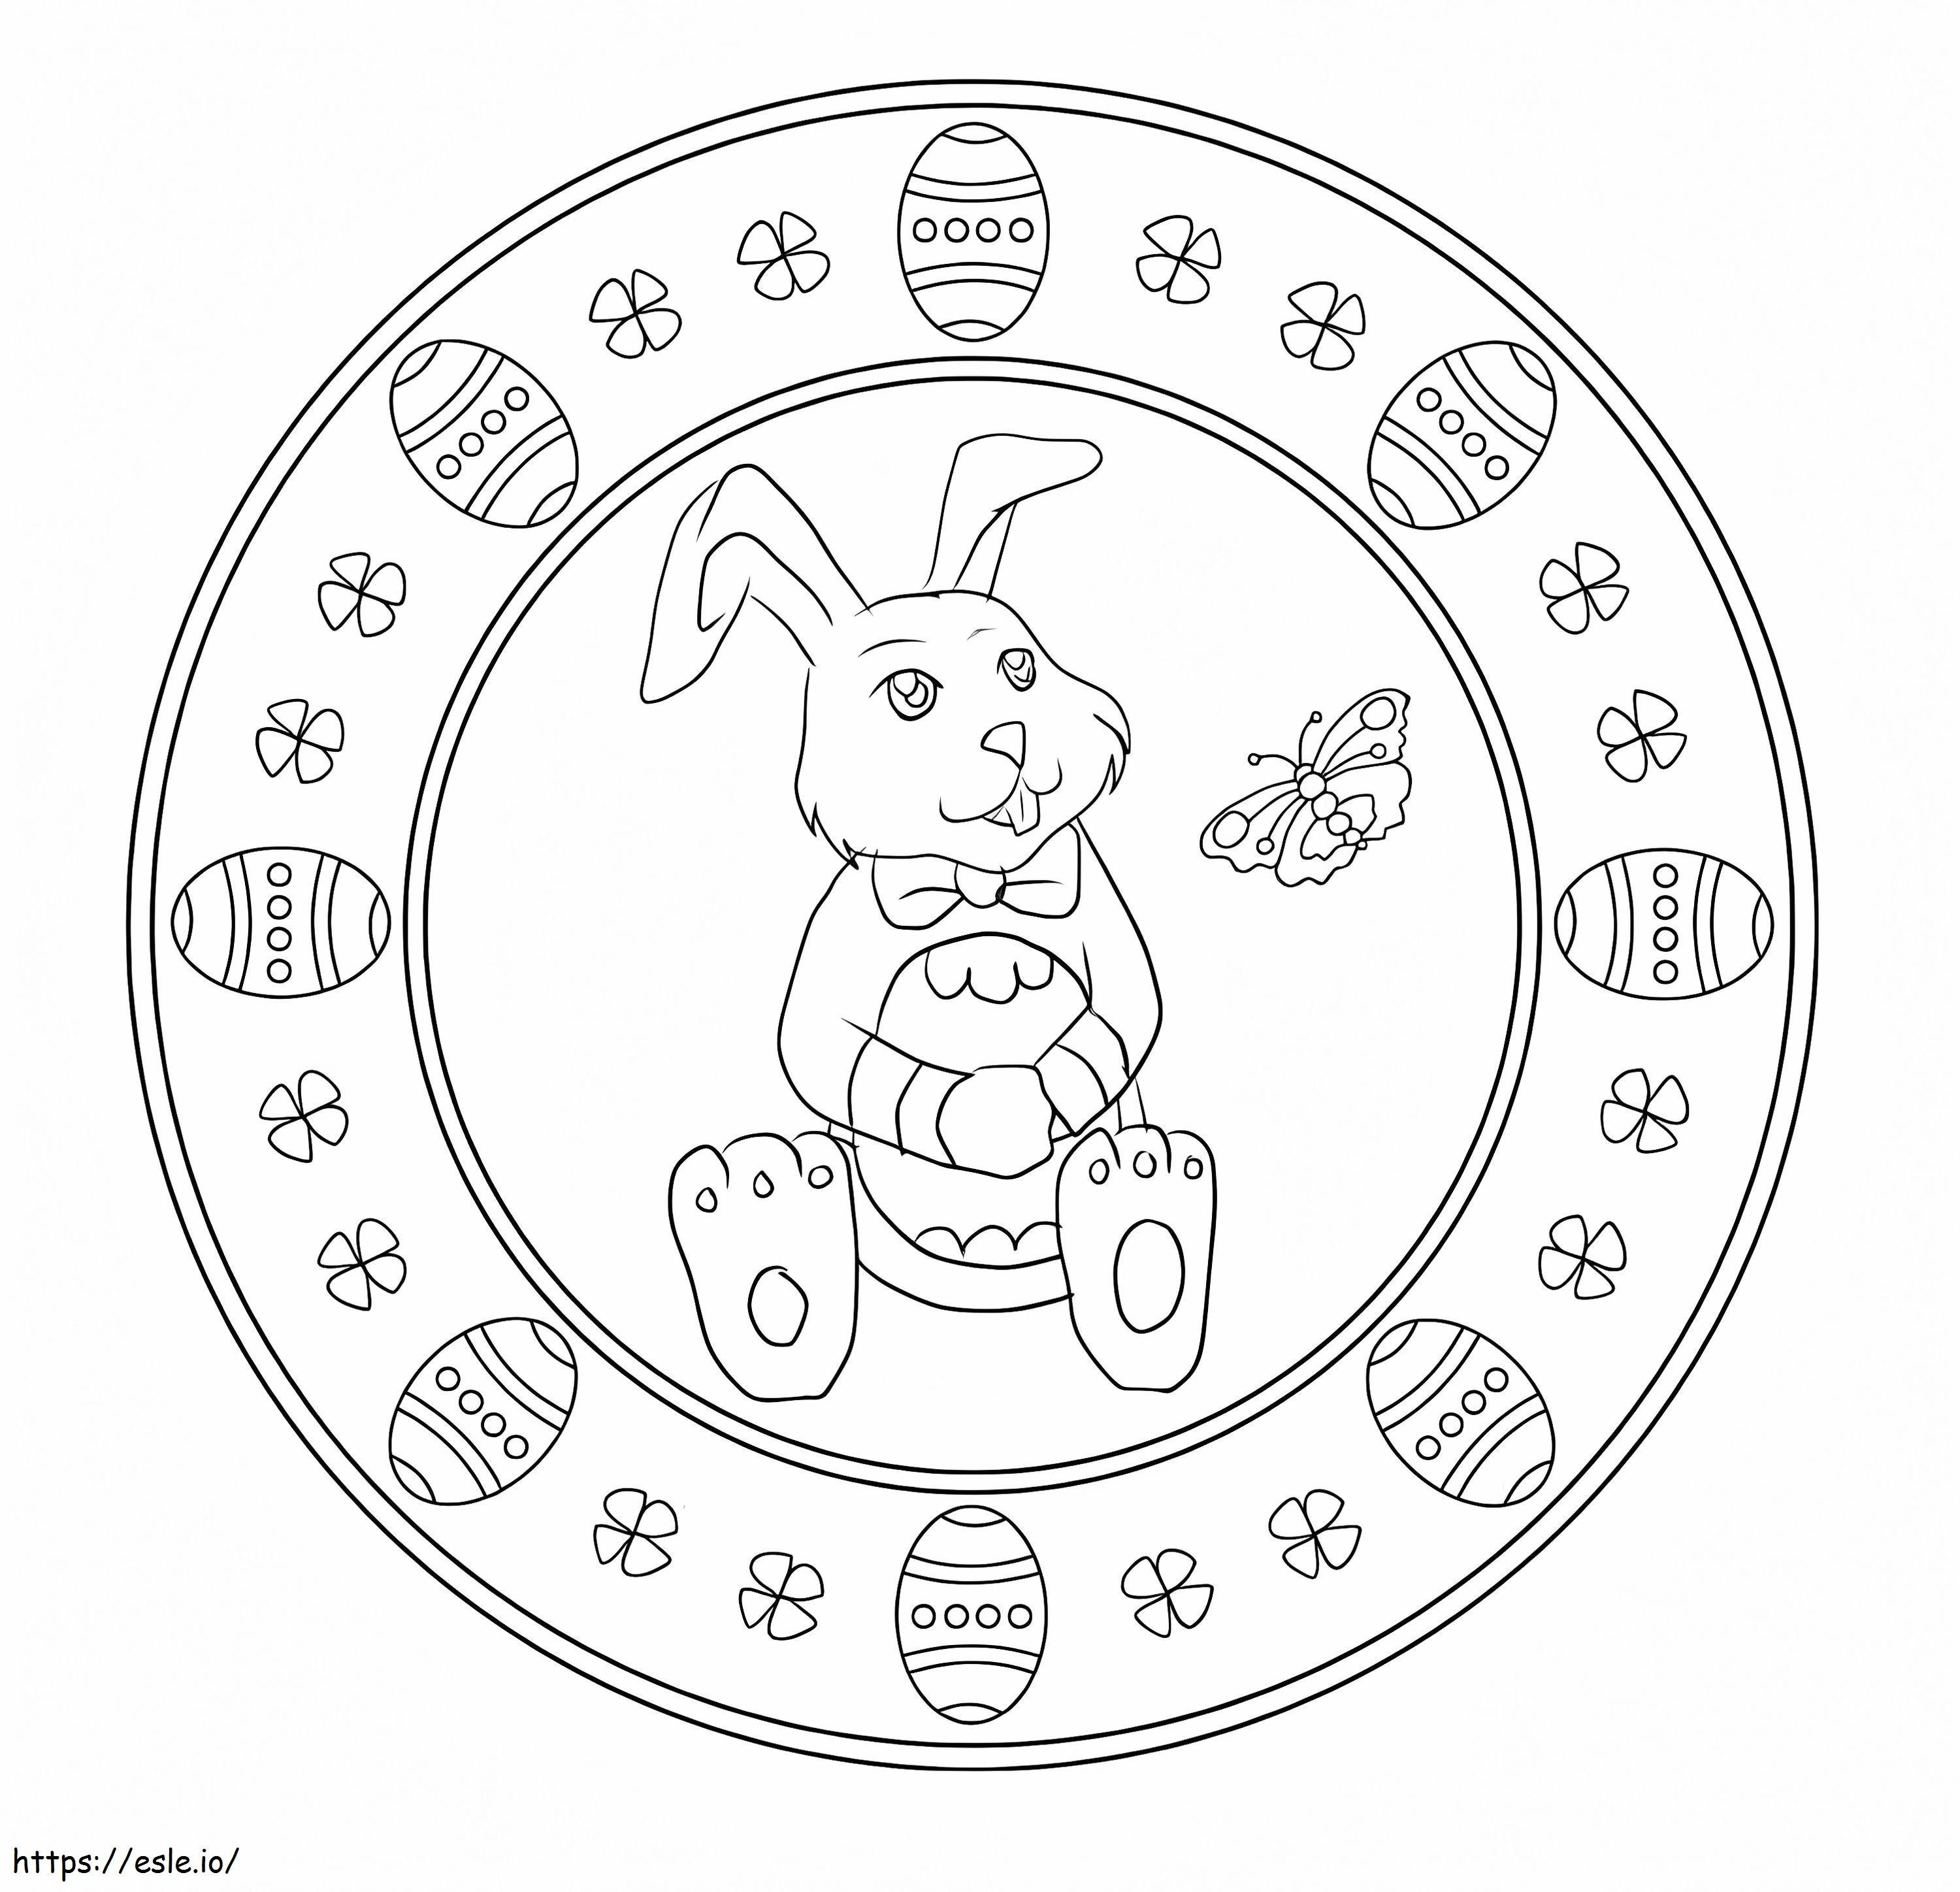 Mandala de Páscoa do coelho para colorir